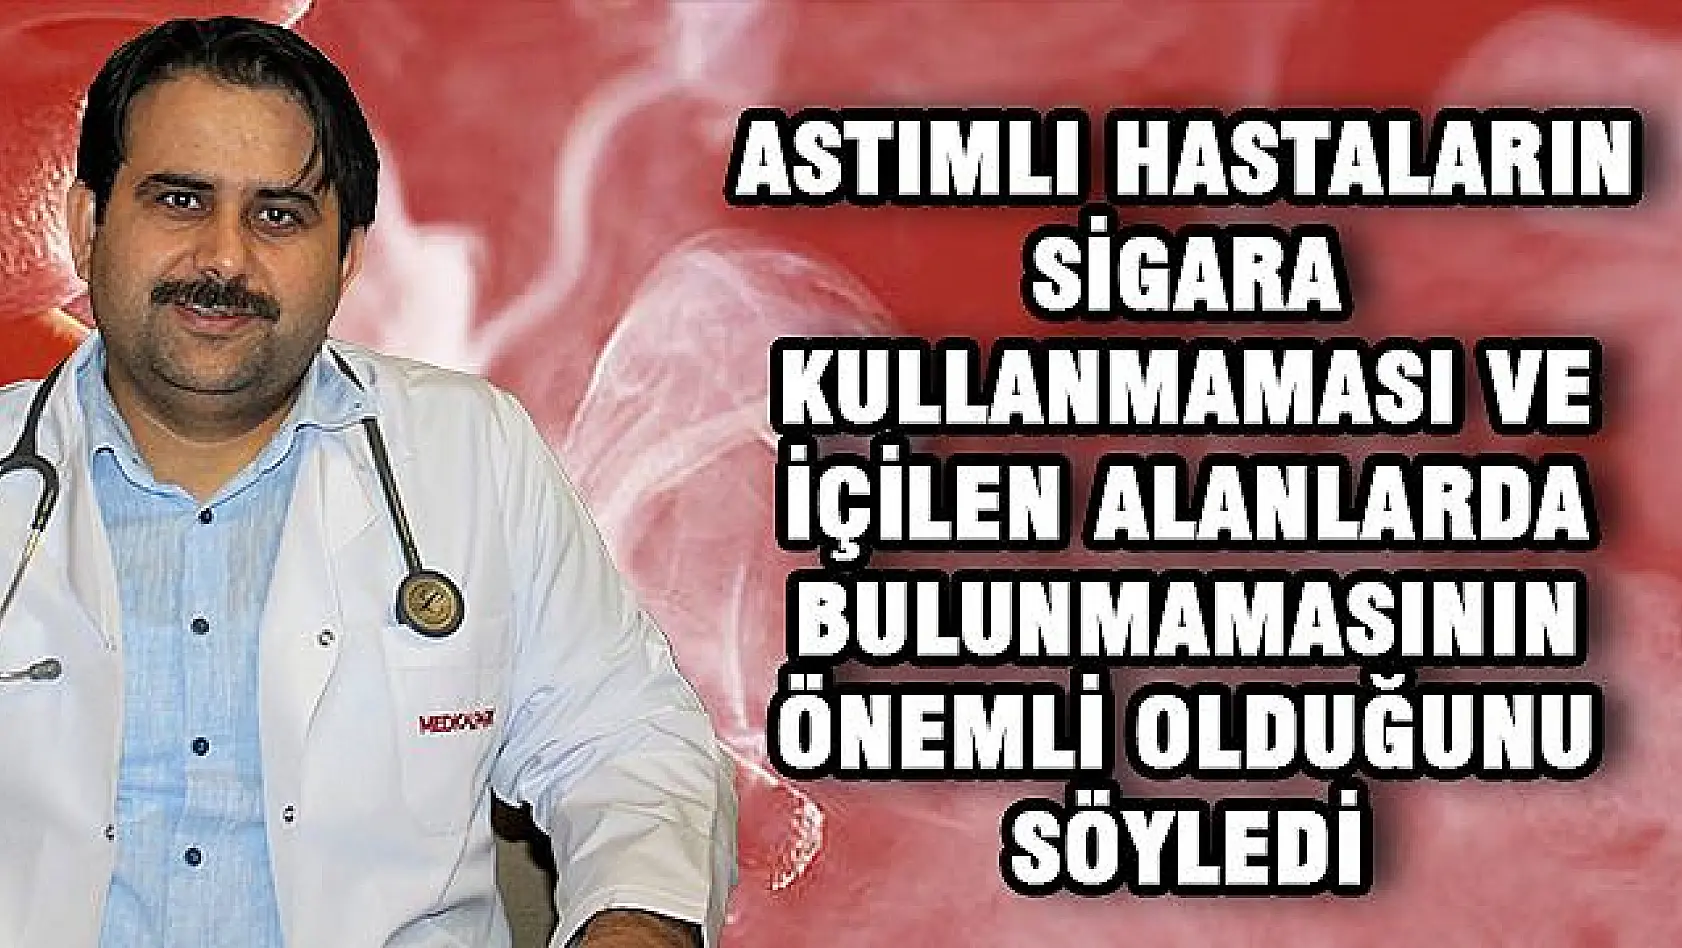 UZMAN DR. AZAR, 'ASTIMI TETİKLEYEN EN BAŞLICA NEDENLERDEN BİRİ SİGARADIR'